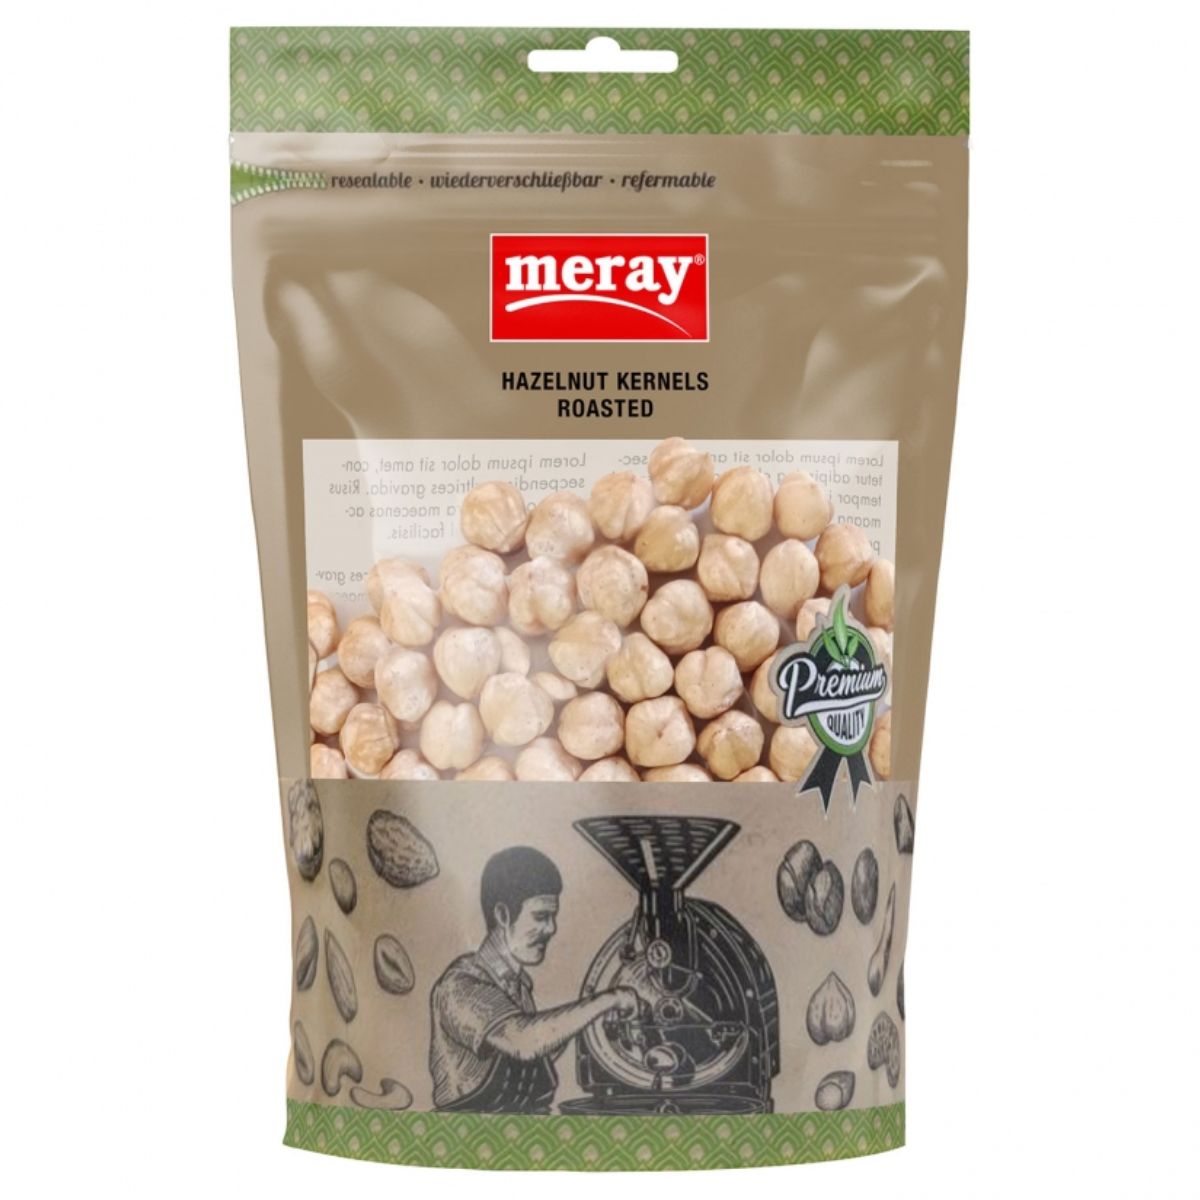 Merry Meray - Hazelnut Kernels Roasted - 150g in a bag.